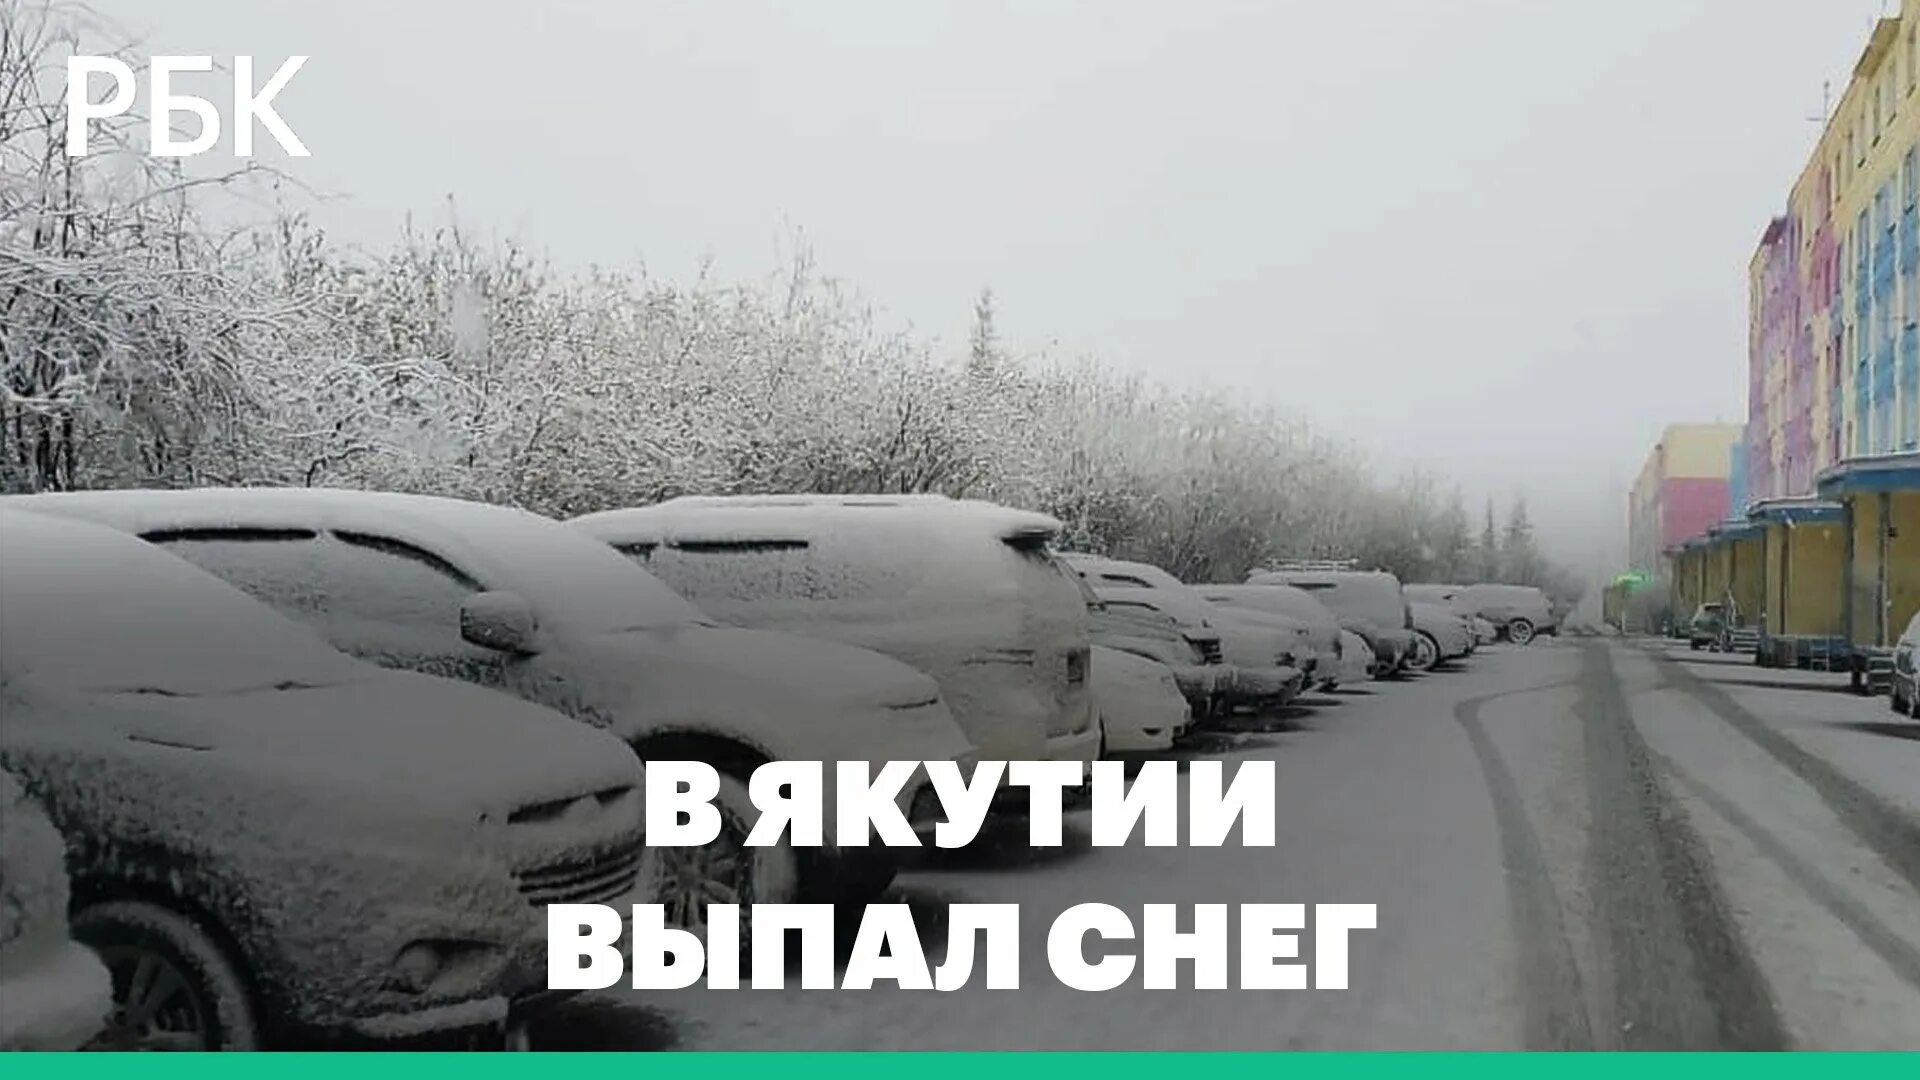 Якутия снег. Сугробы в Якутии. Снегопад в городе. Снег в июне. Ночью выпал снег и пока мы спали